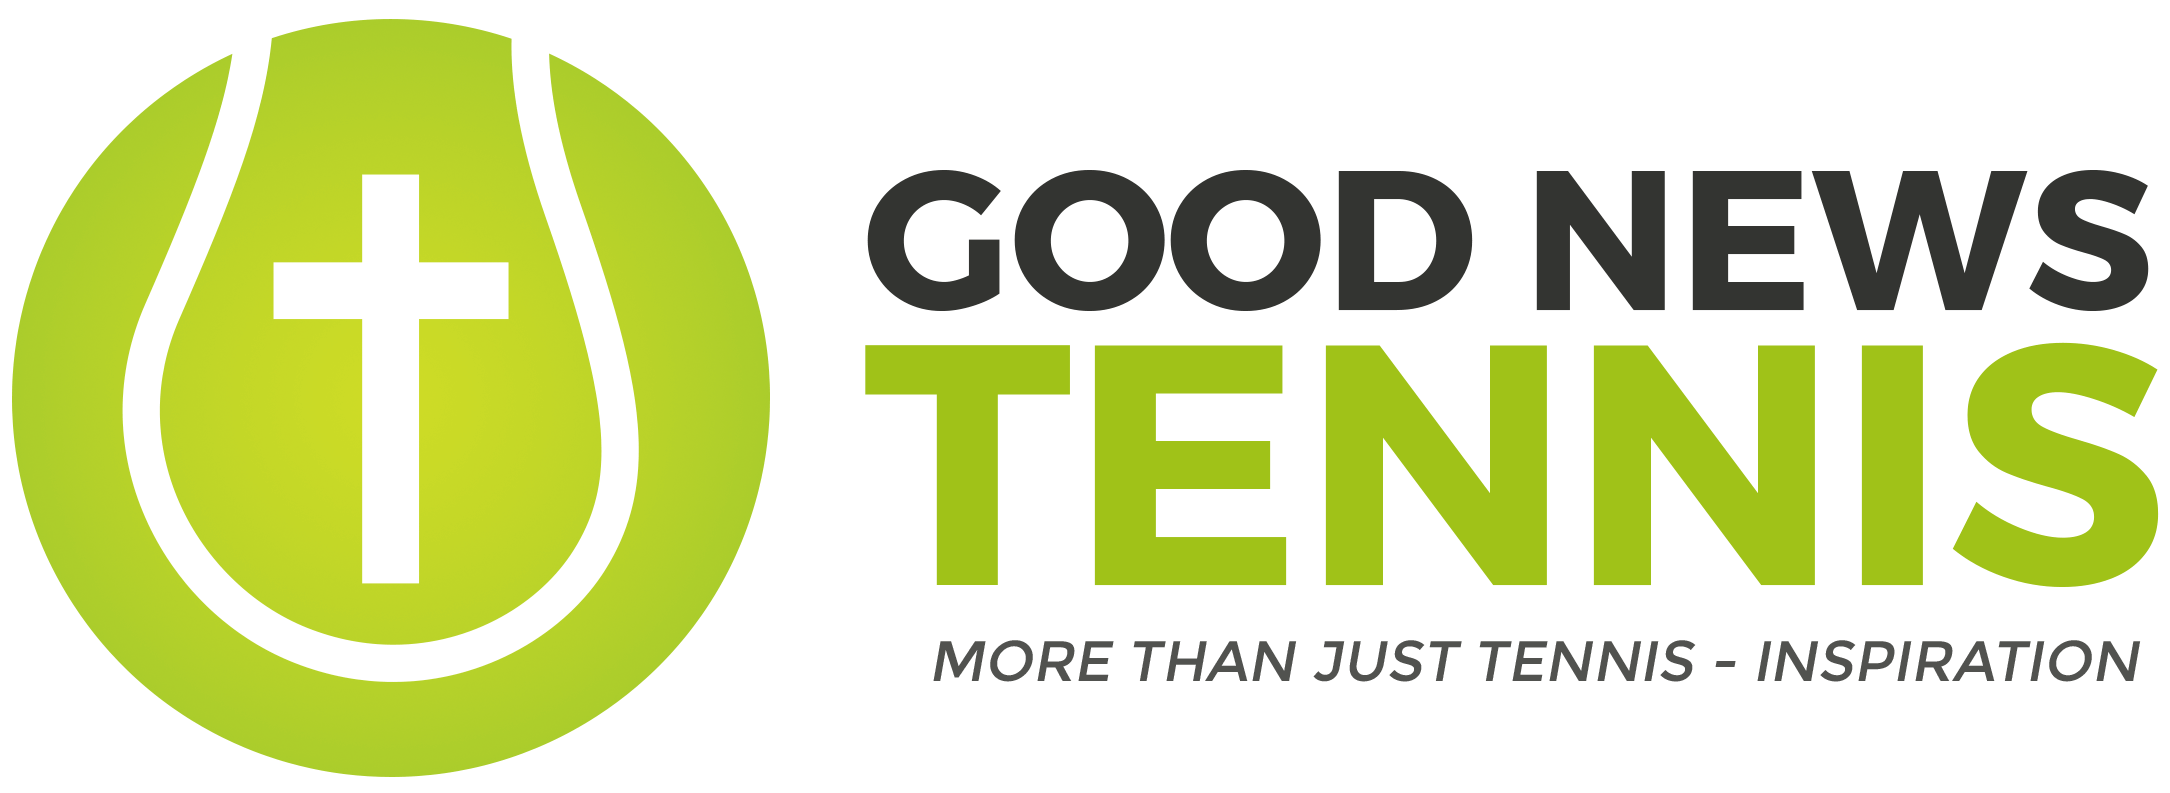 Good News Tennis